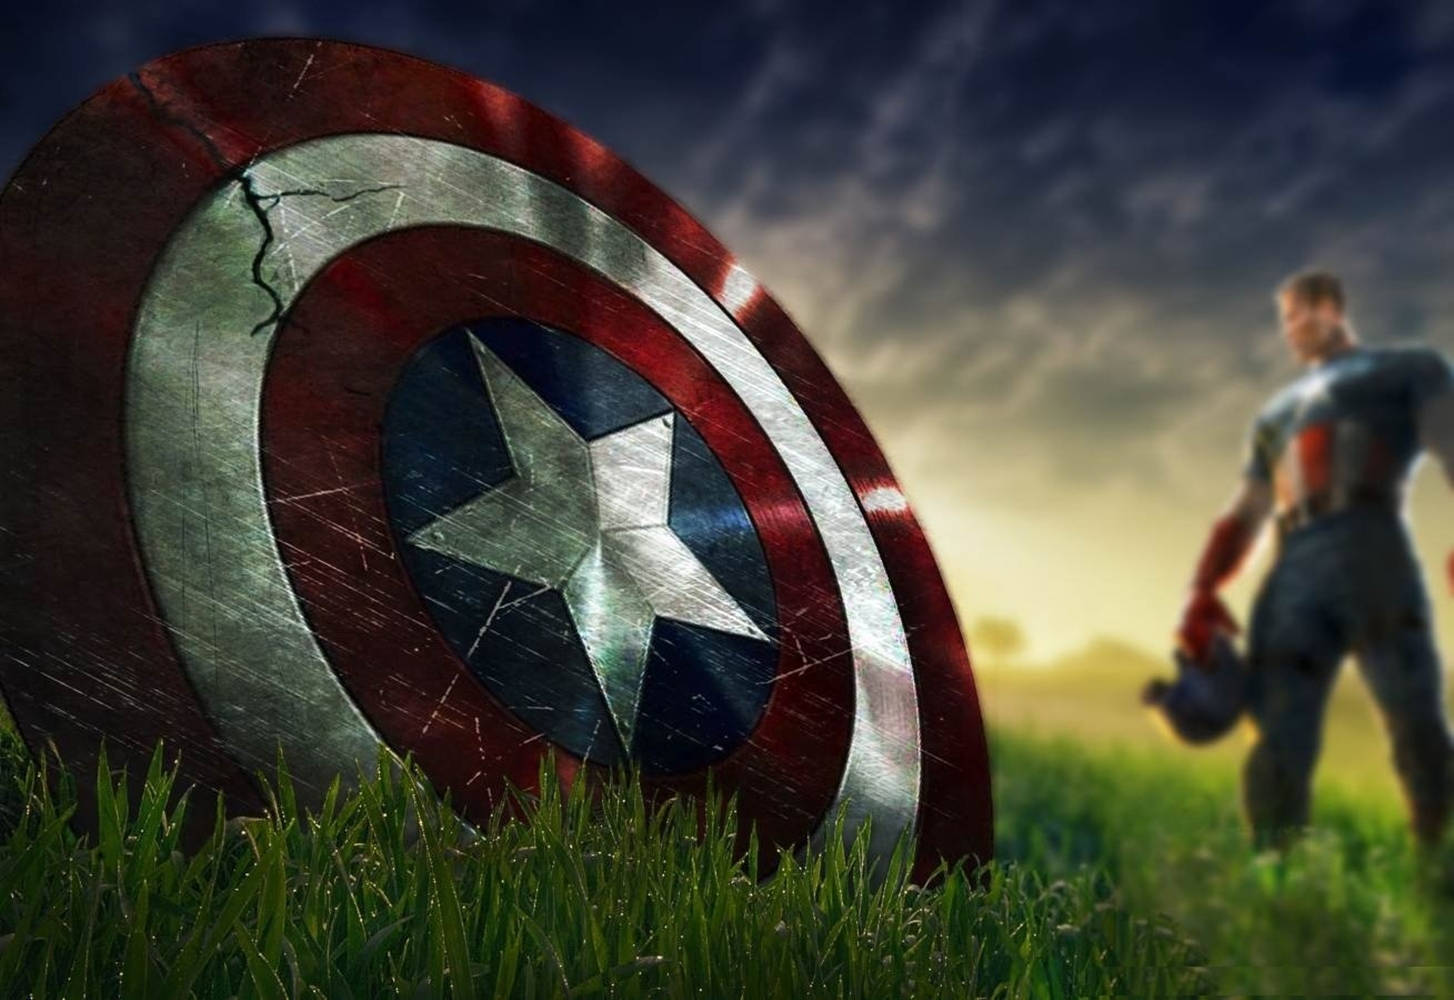 Avengers Captain America Shield Desktop Wallpaper